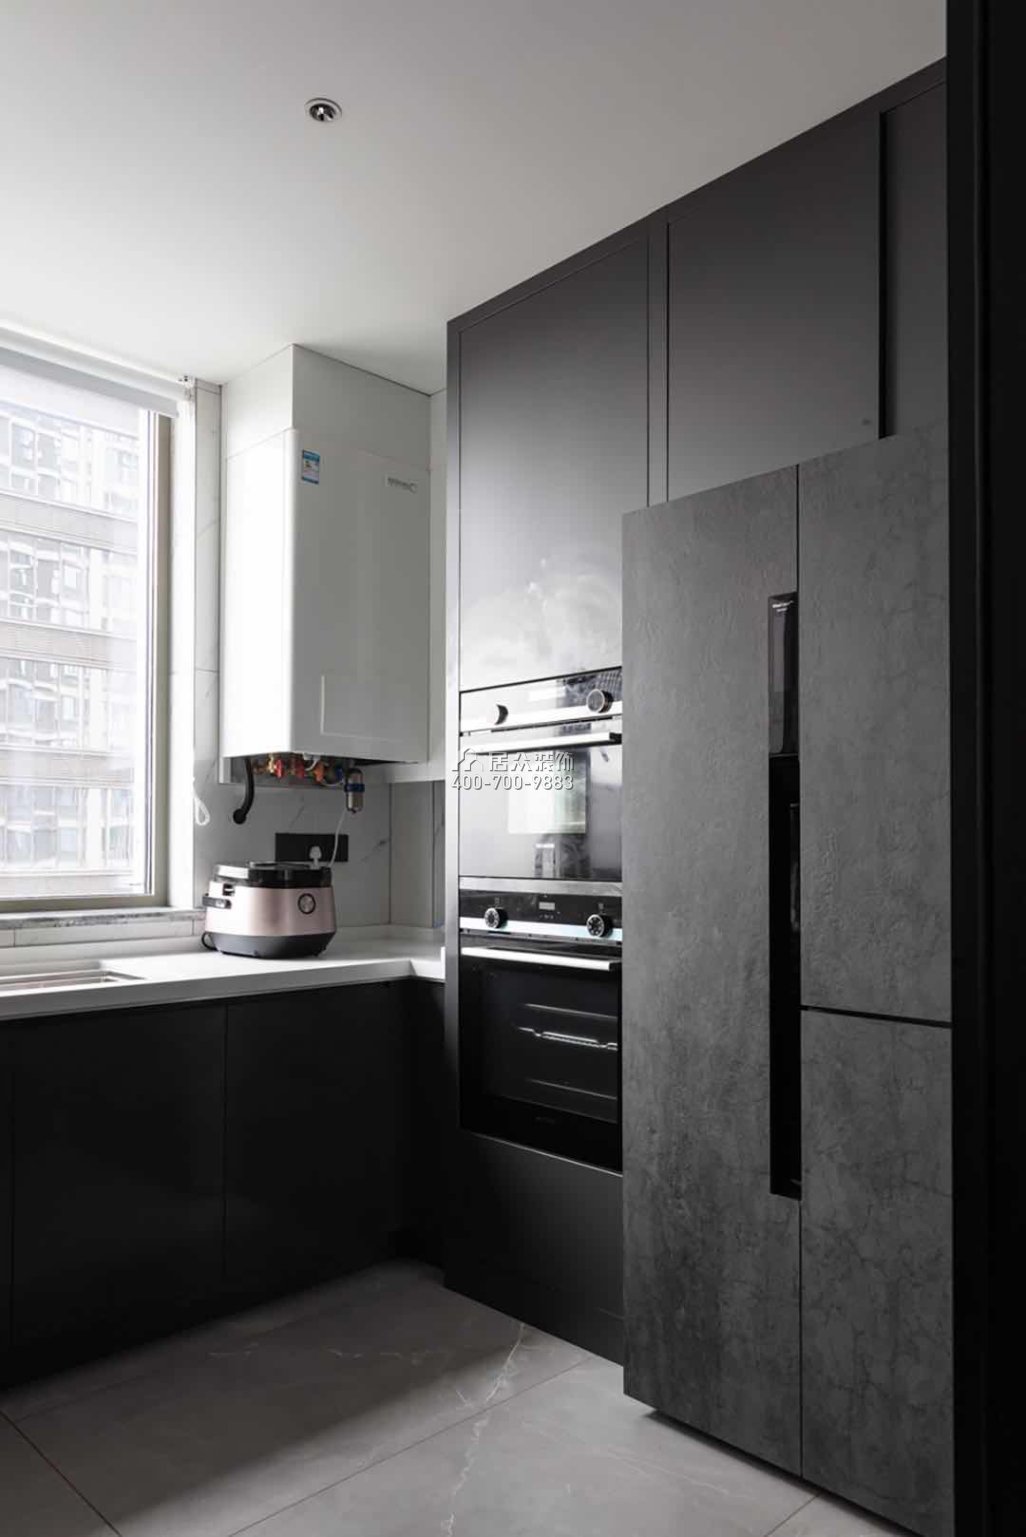 建发央玺186平方米现代简约风格平层户型厨房装修效果图